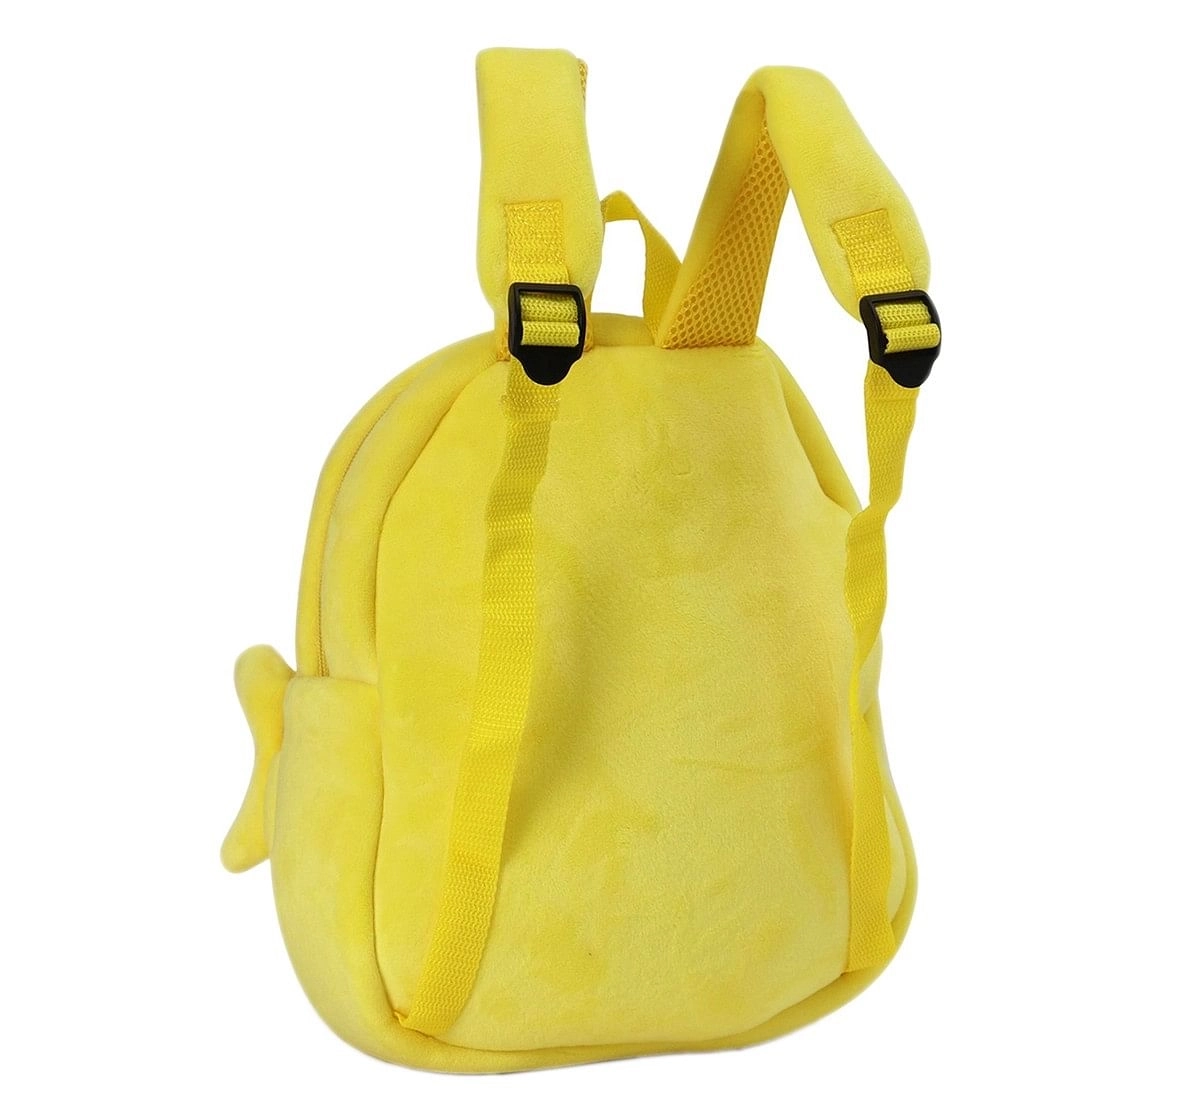 Baby Shark Baby Shark Plush Bag, 0M+ (Yellow)